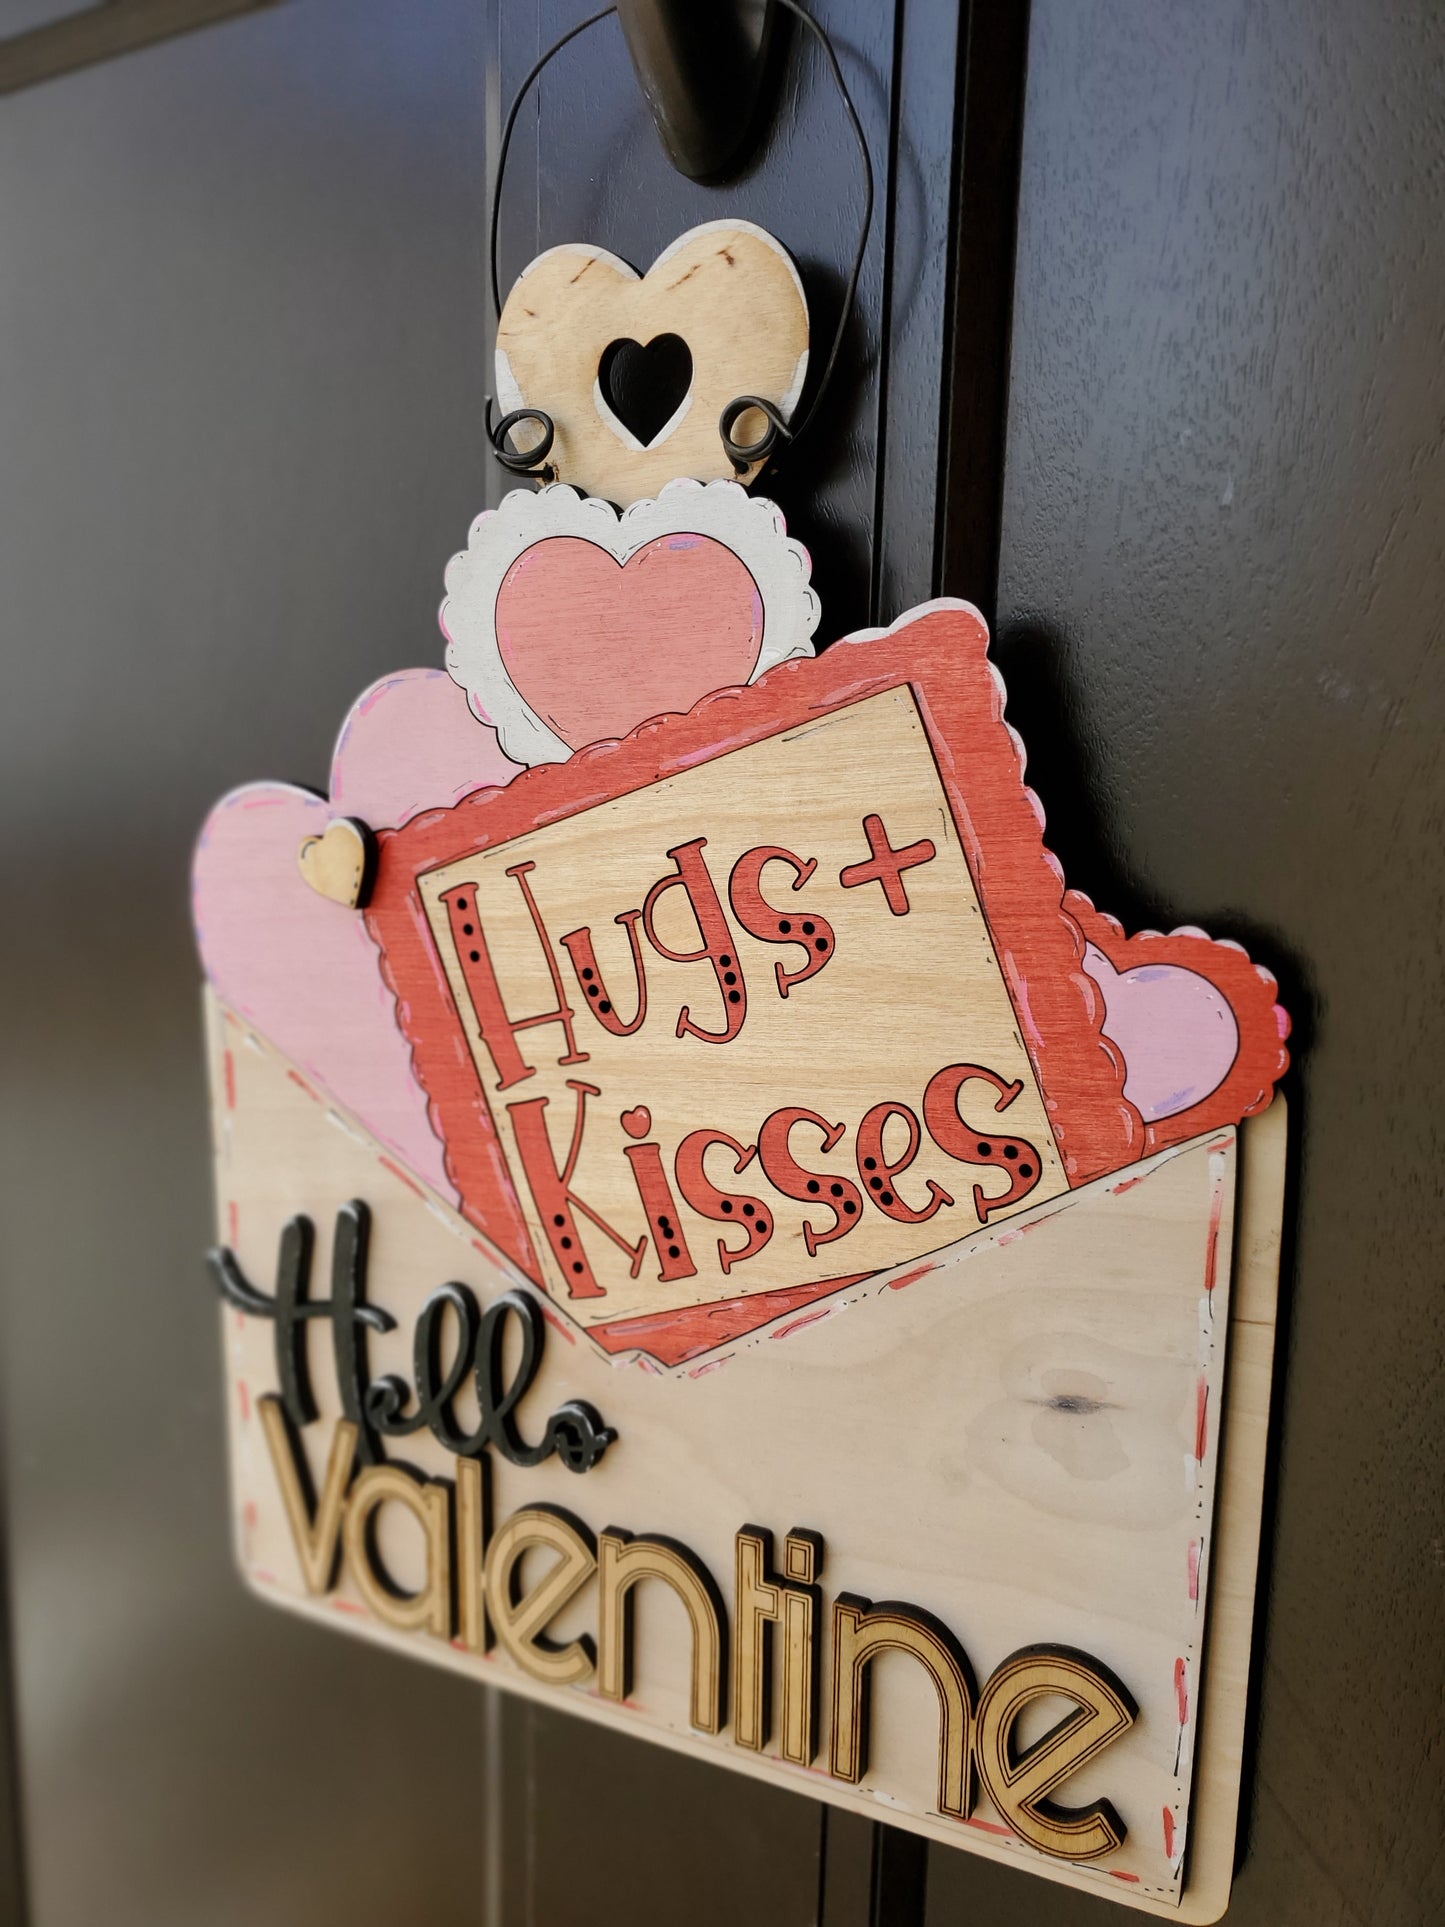 Hello Valentine Door Hanger